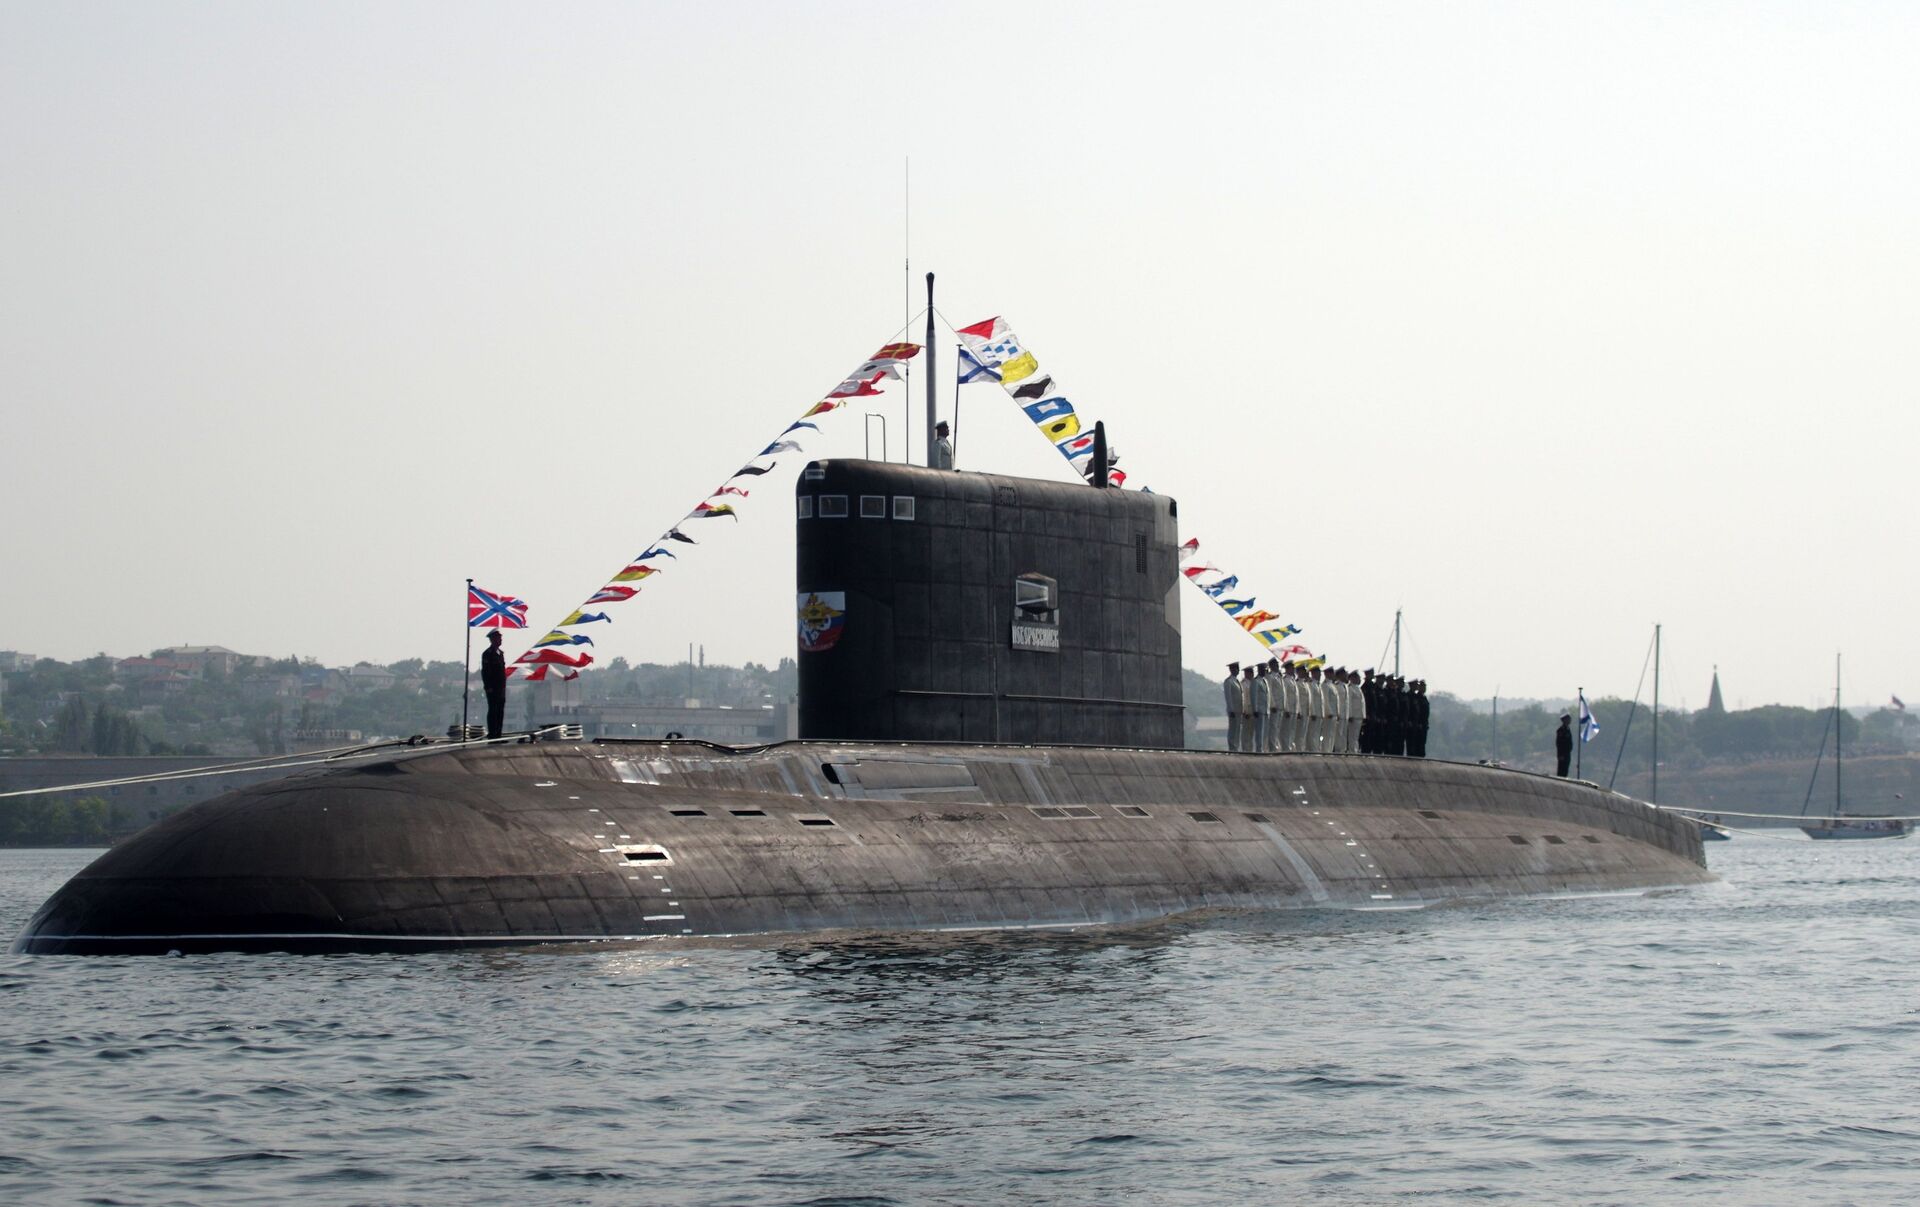 Черноморский подводный флот. Подводная лодка проекта 636.3. Подводная лодка 636.3 ТОФ. Б-261 «Новороссийск». Подводные лодки проекта 636 «Варшавянка».